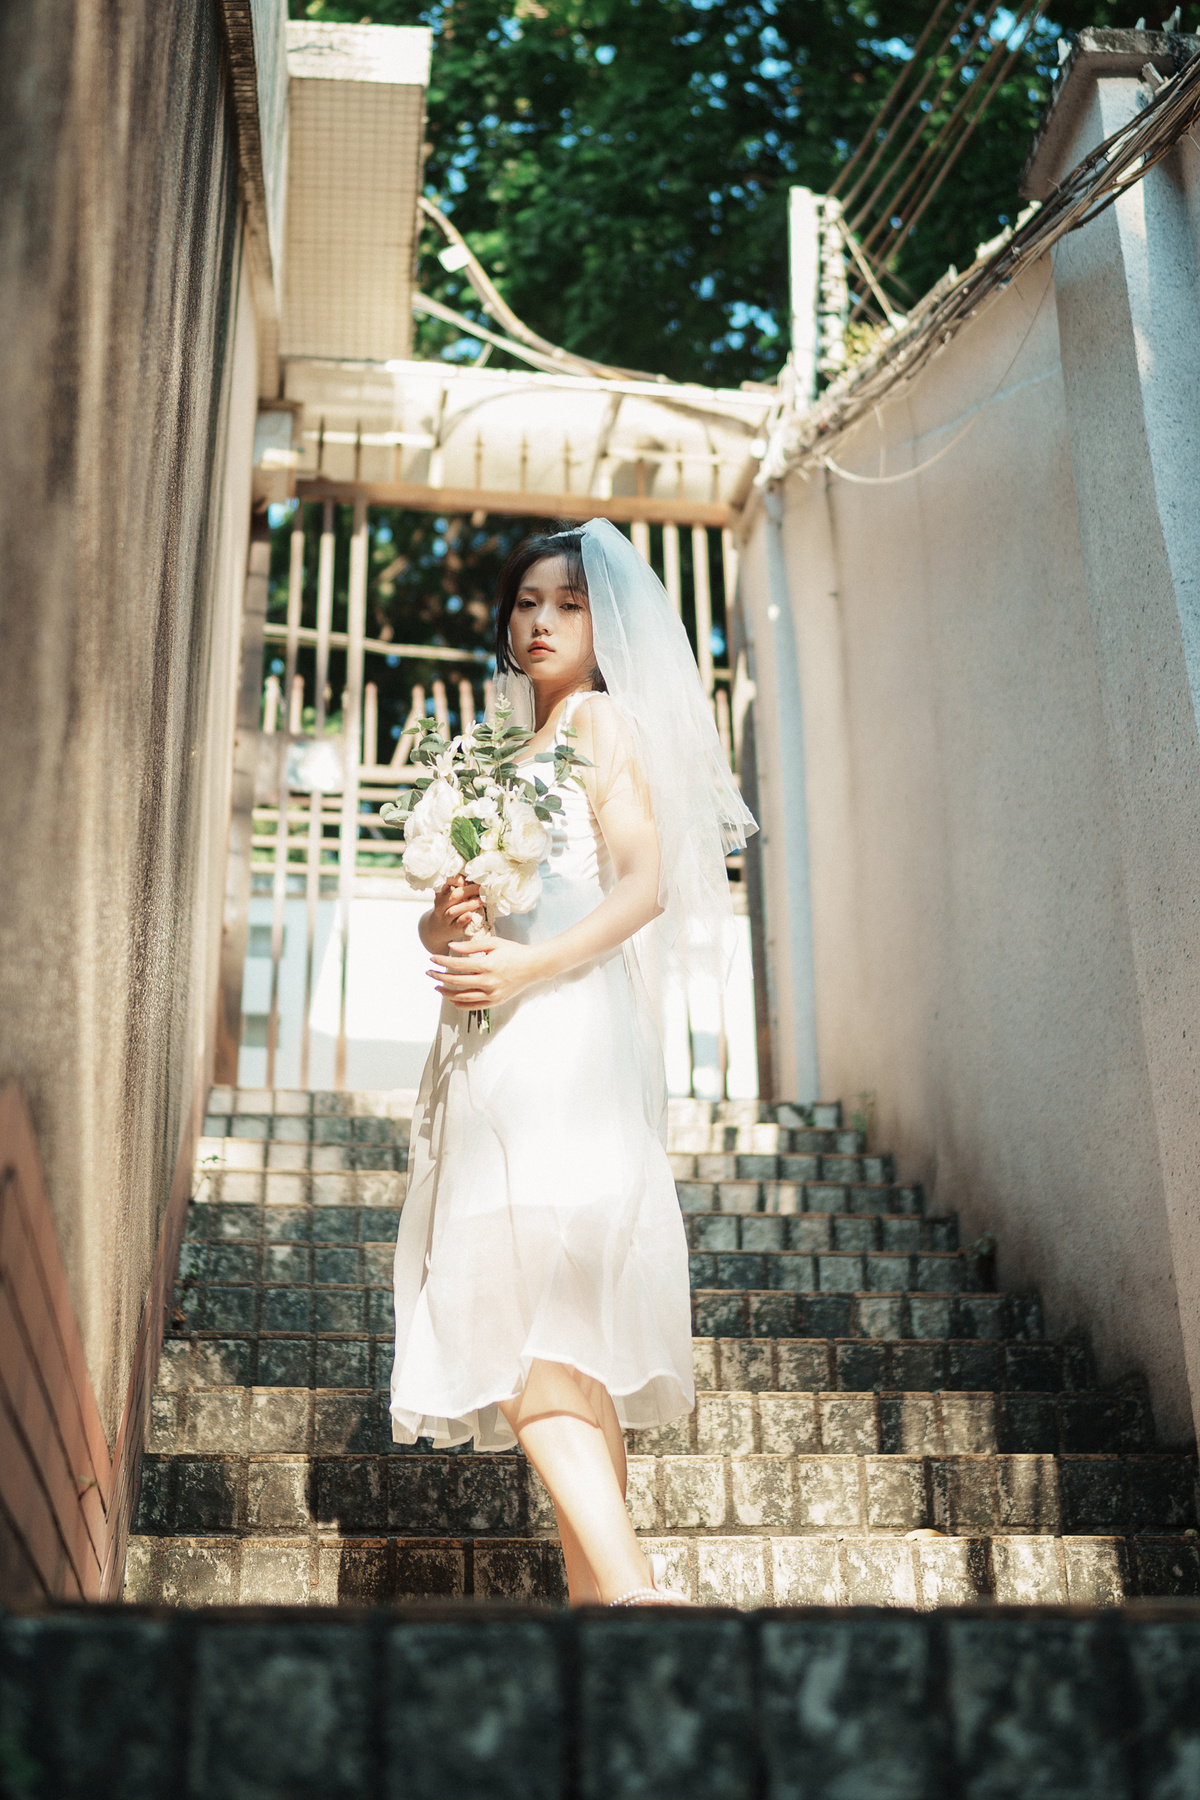 一个穿着白色连衣裙的女子手拿一束花走上楼梯